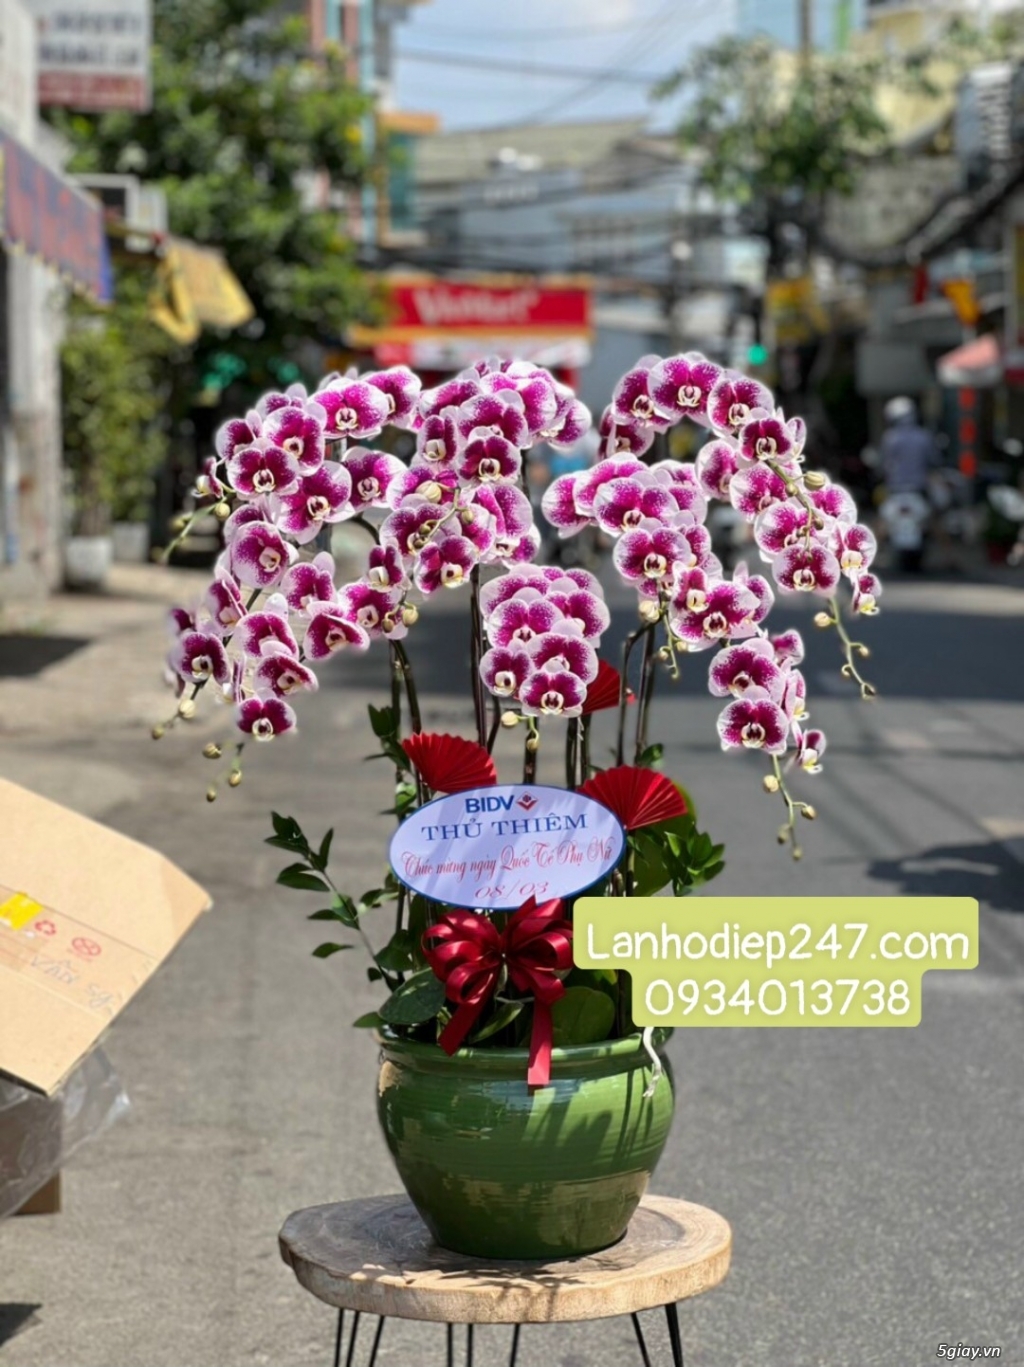 Shop hoa tươi lan hồ điệp 247 tại Đà Nẵng 0934013738 - 12